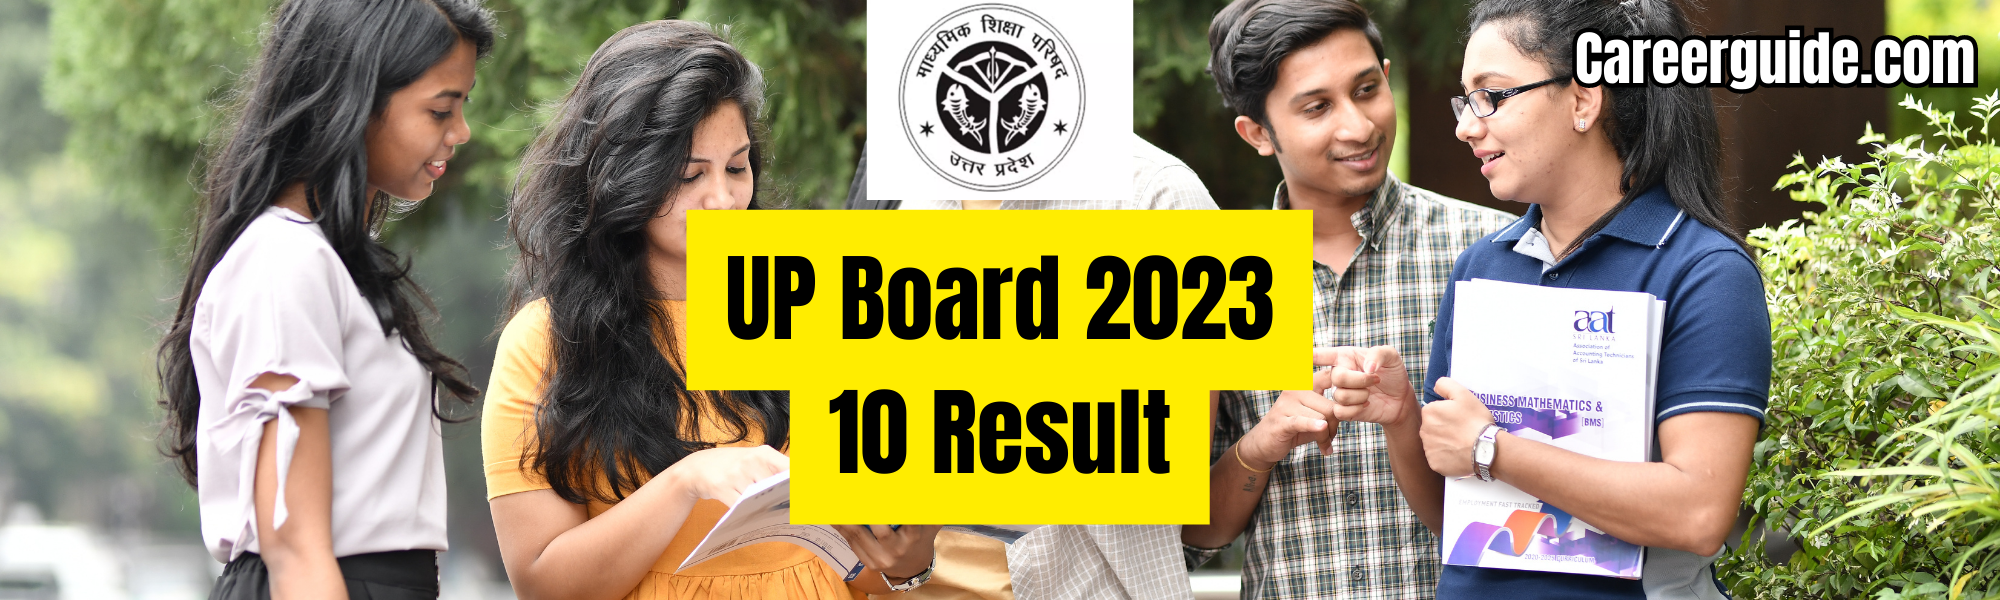 Up board exam result 2023: check online @careerguide.com